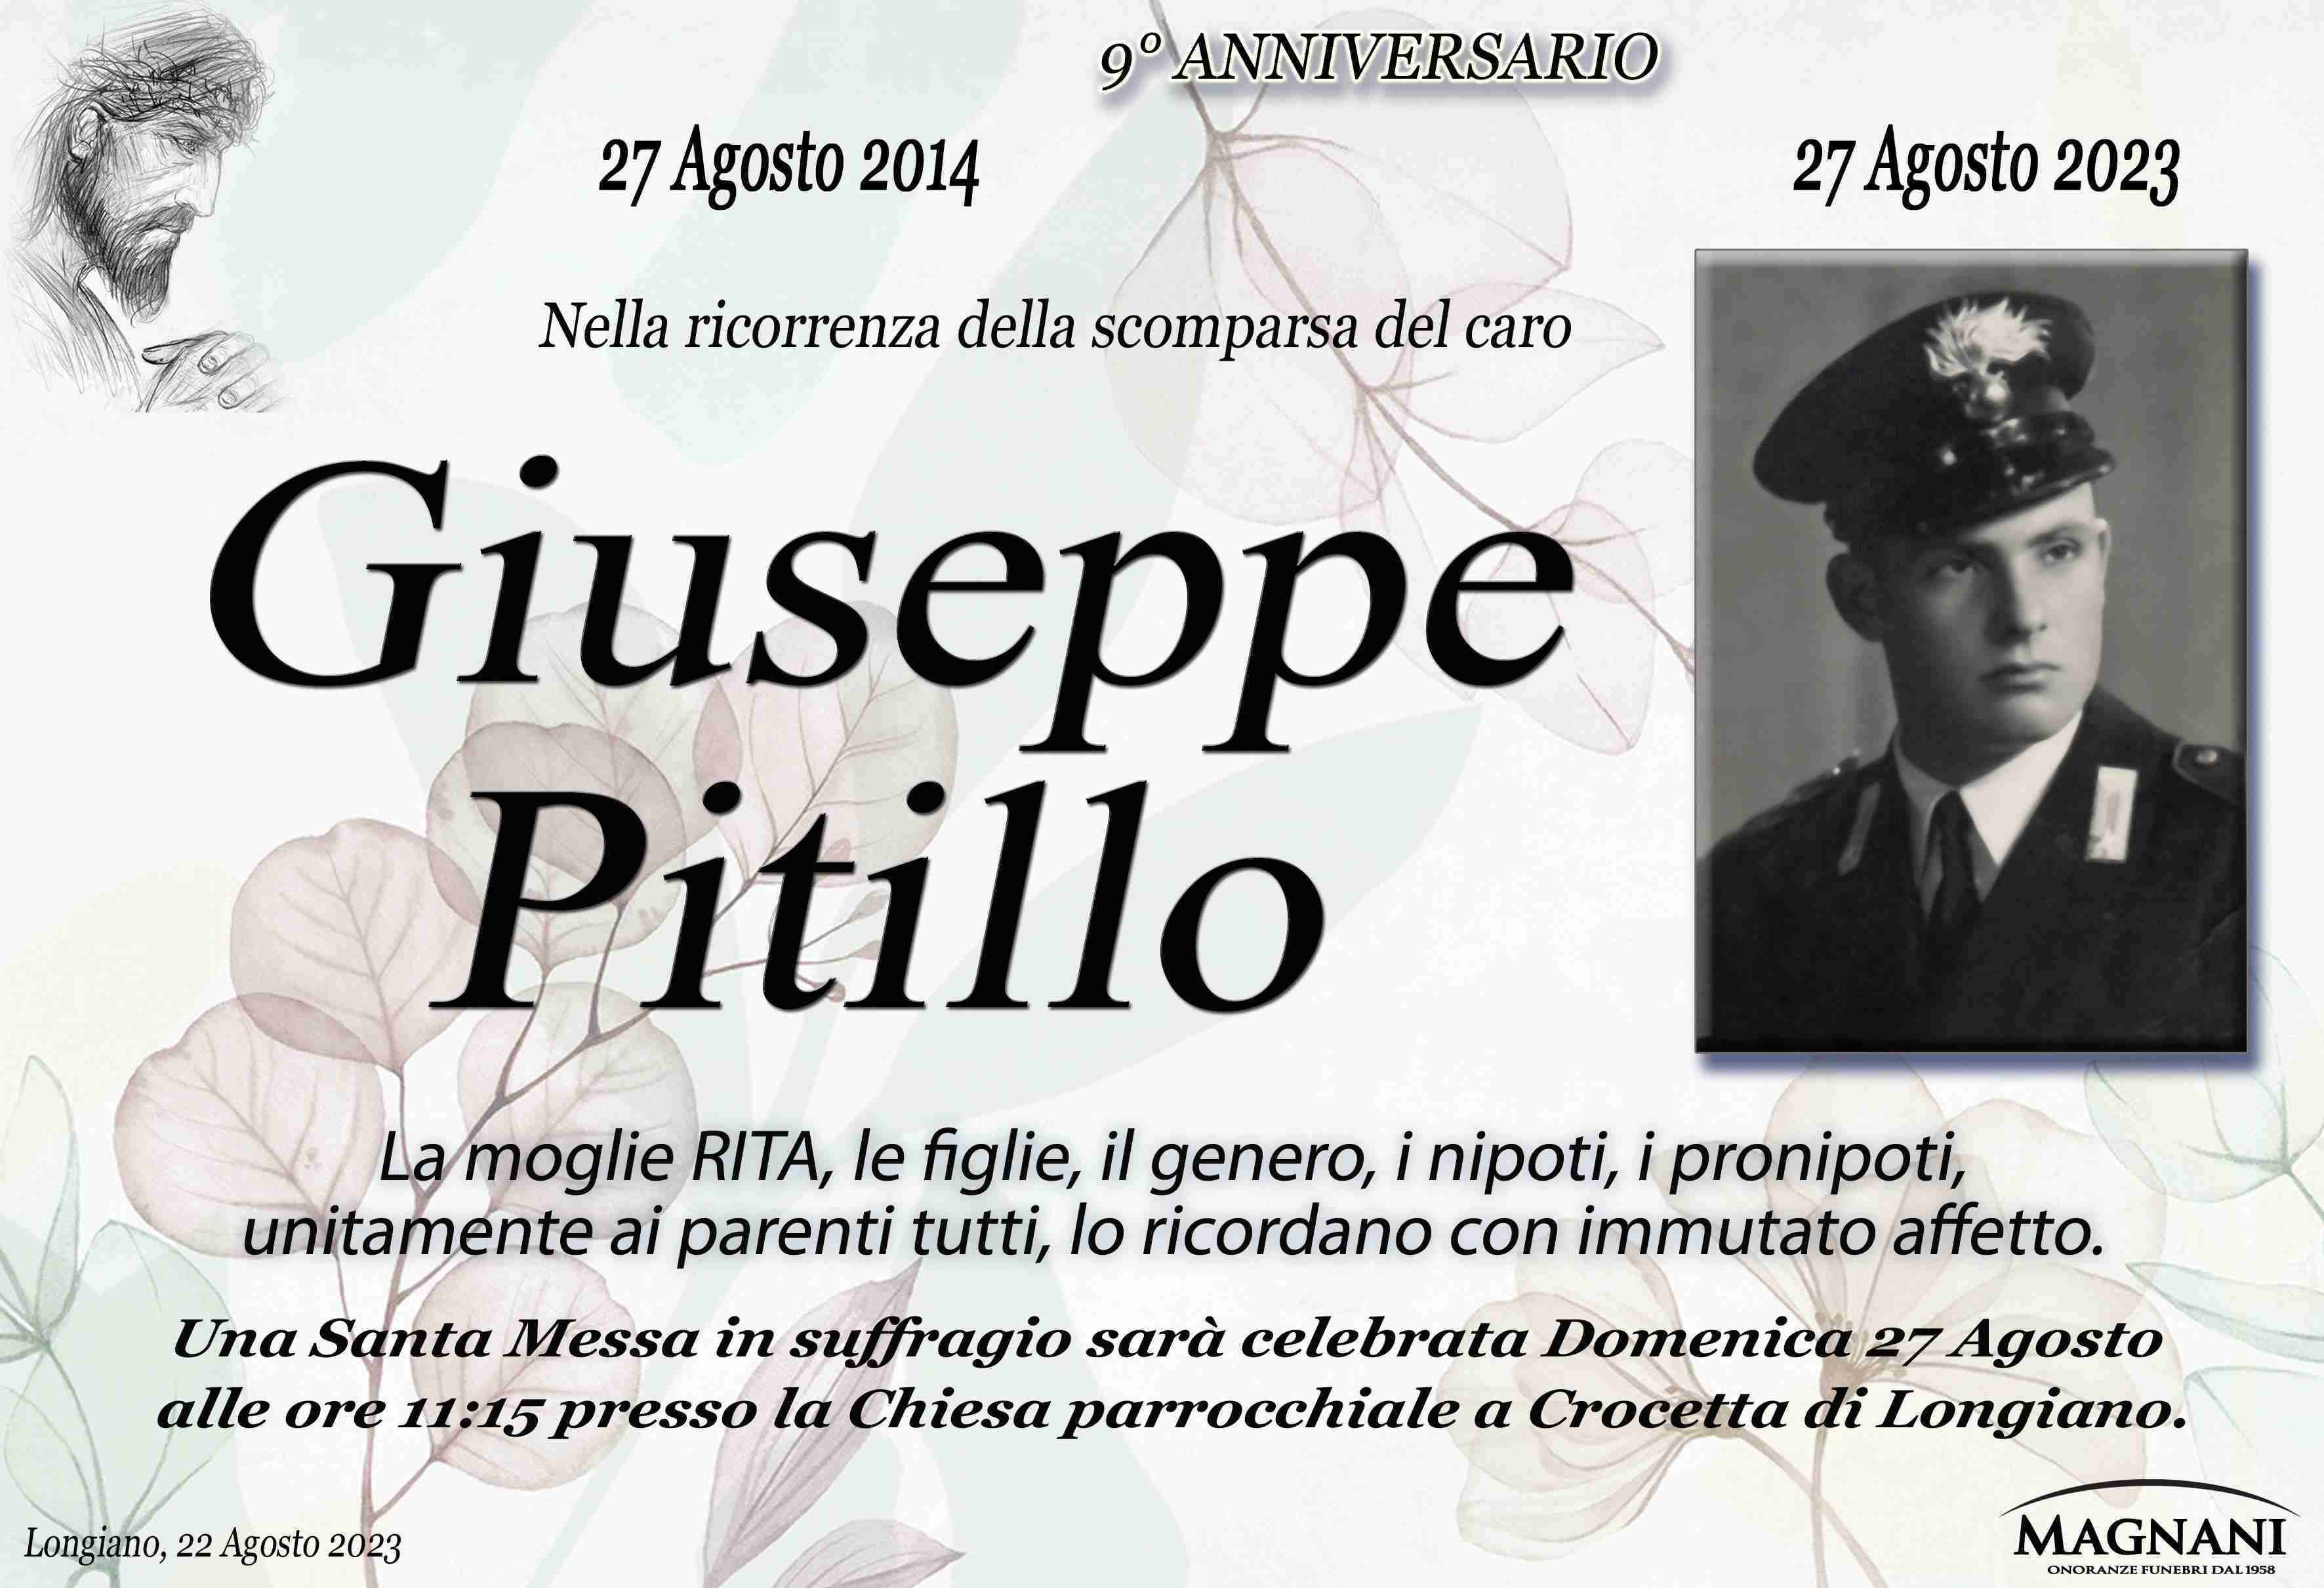 Giuseppe Pitillo